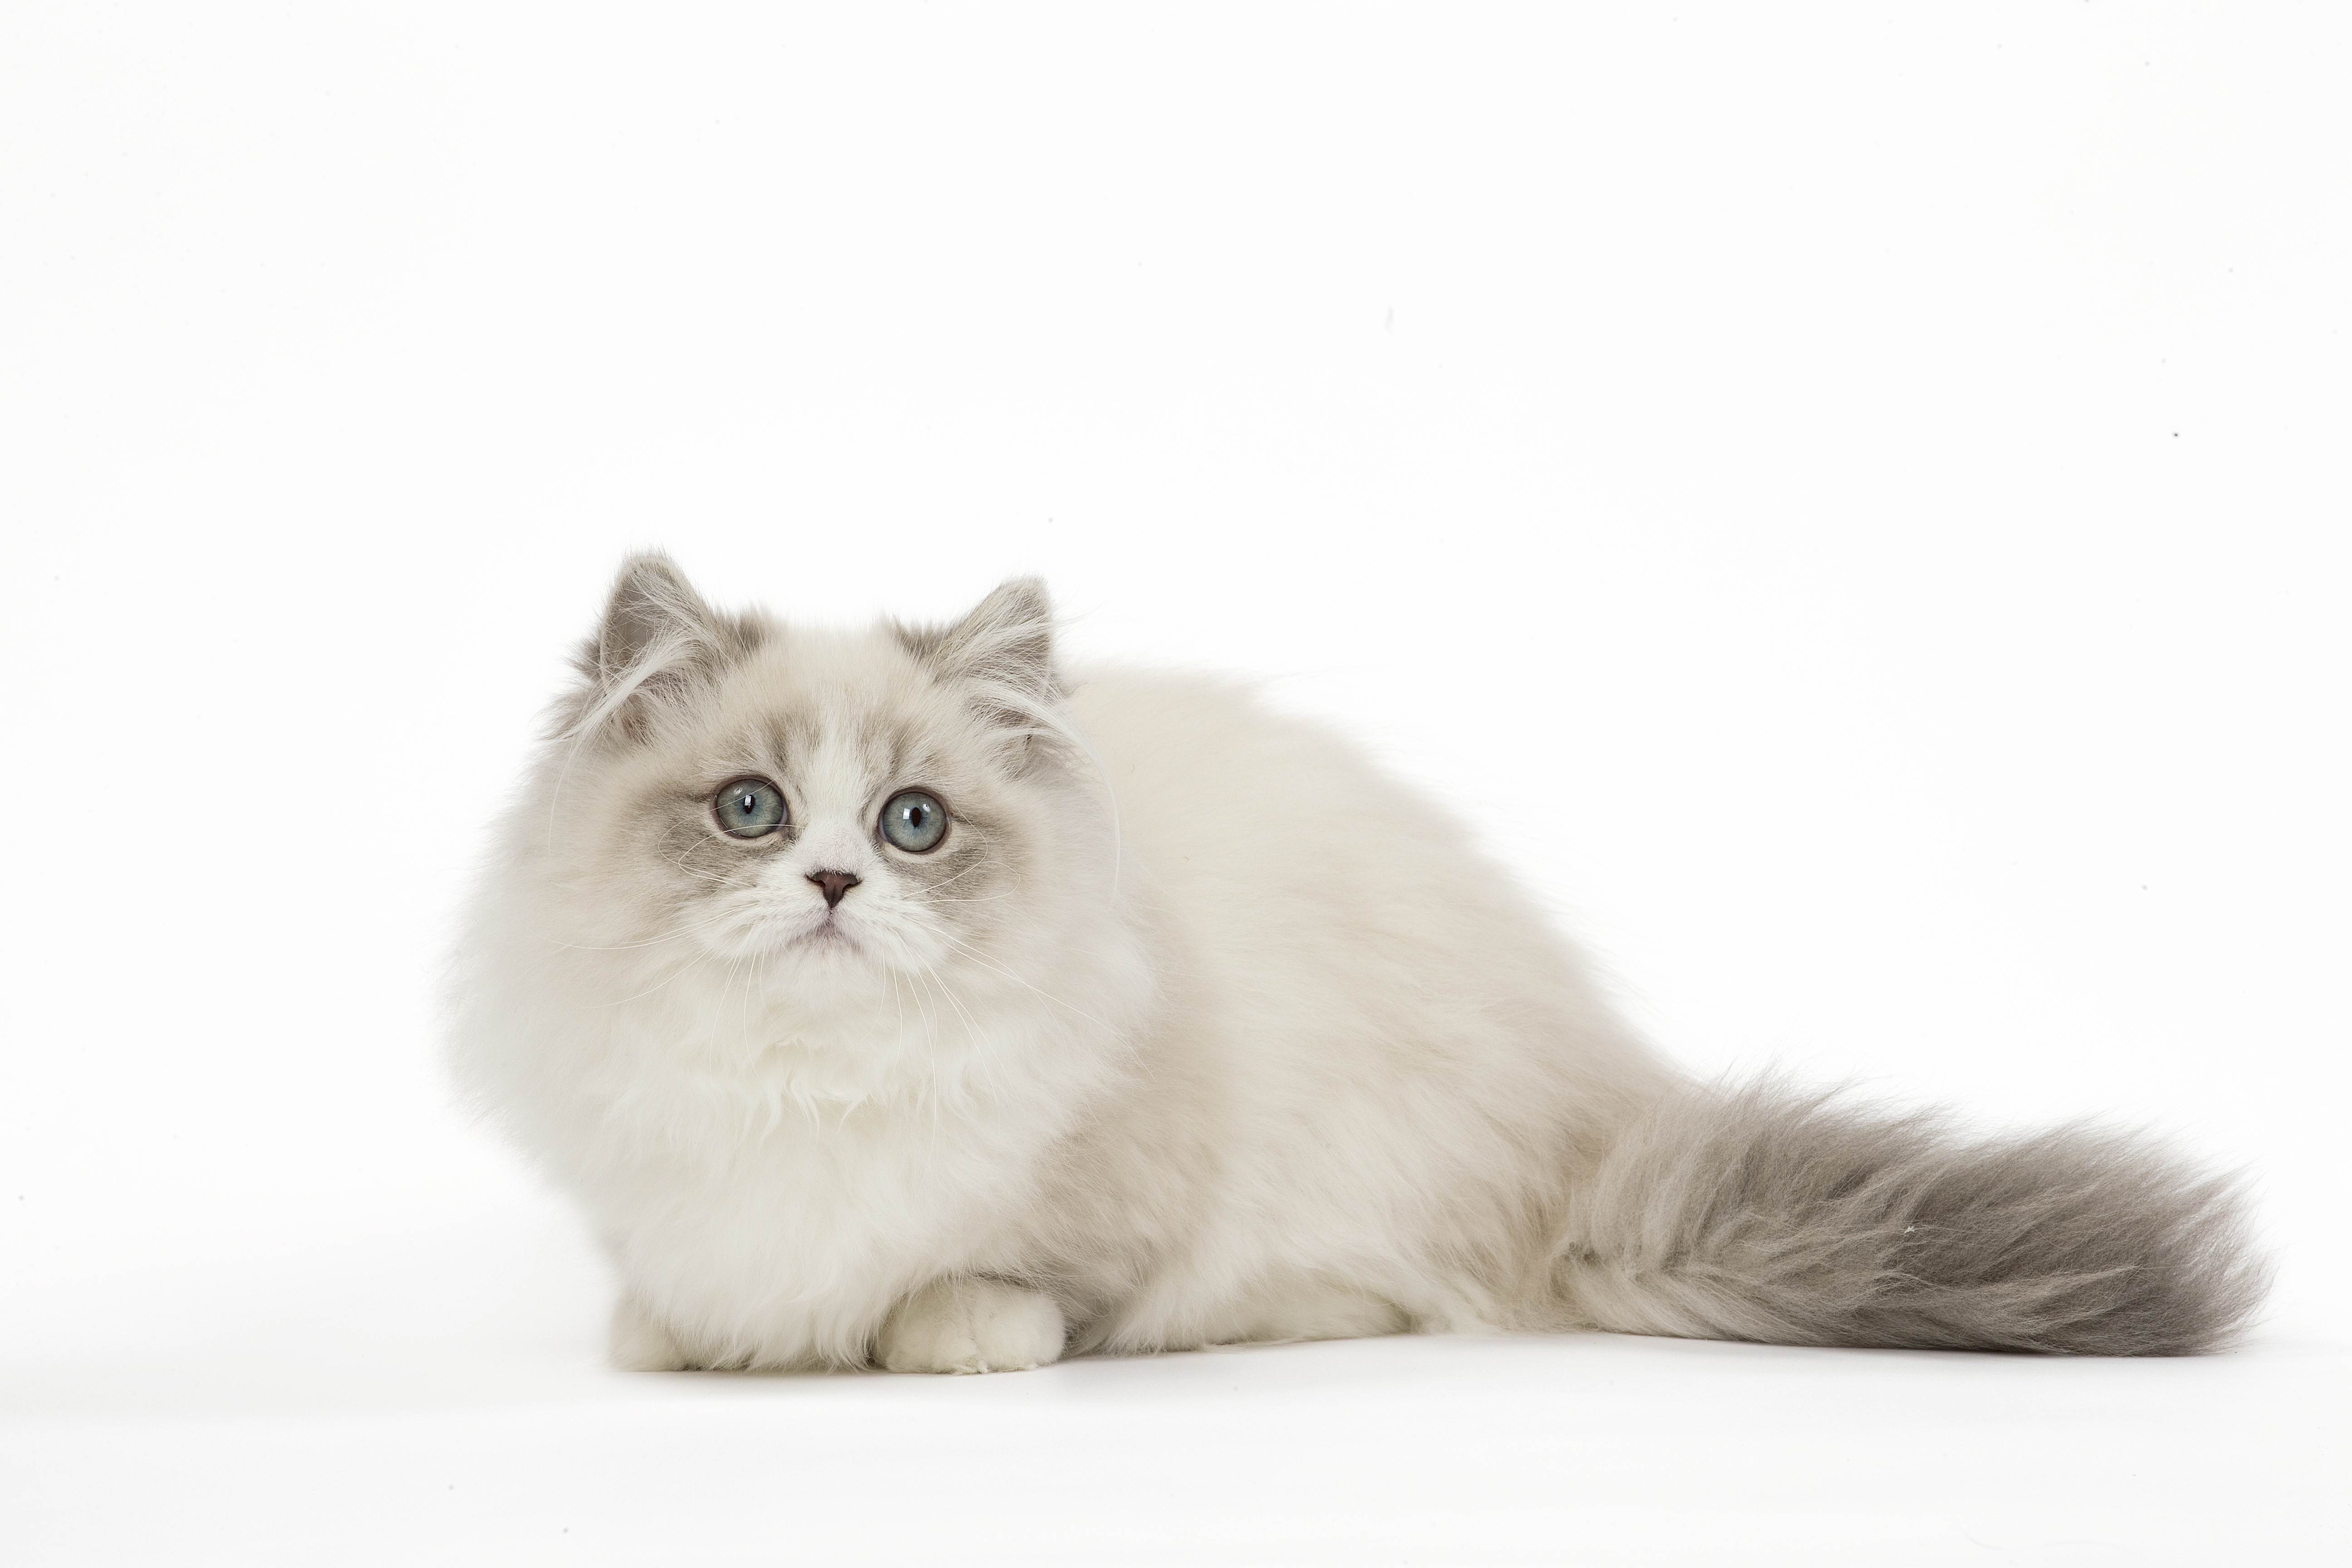 Кошки породы наполеон: описание внешнего вида и характера кота, особенности содержания, советы по выбору котят